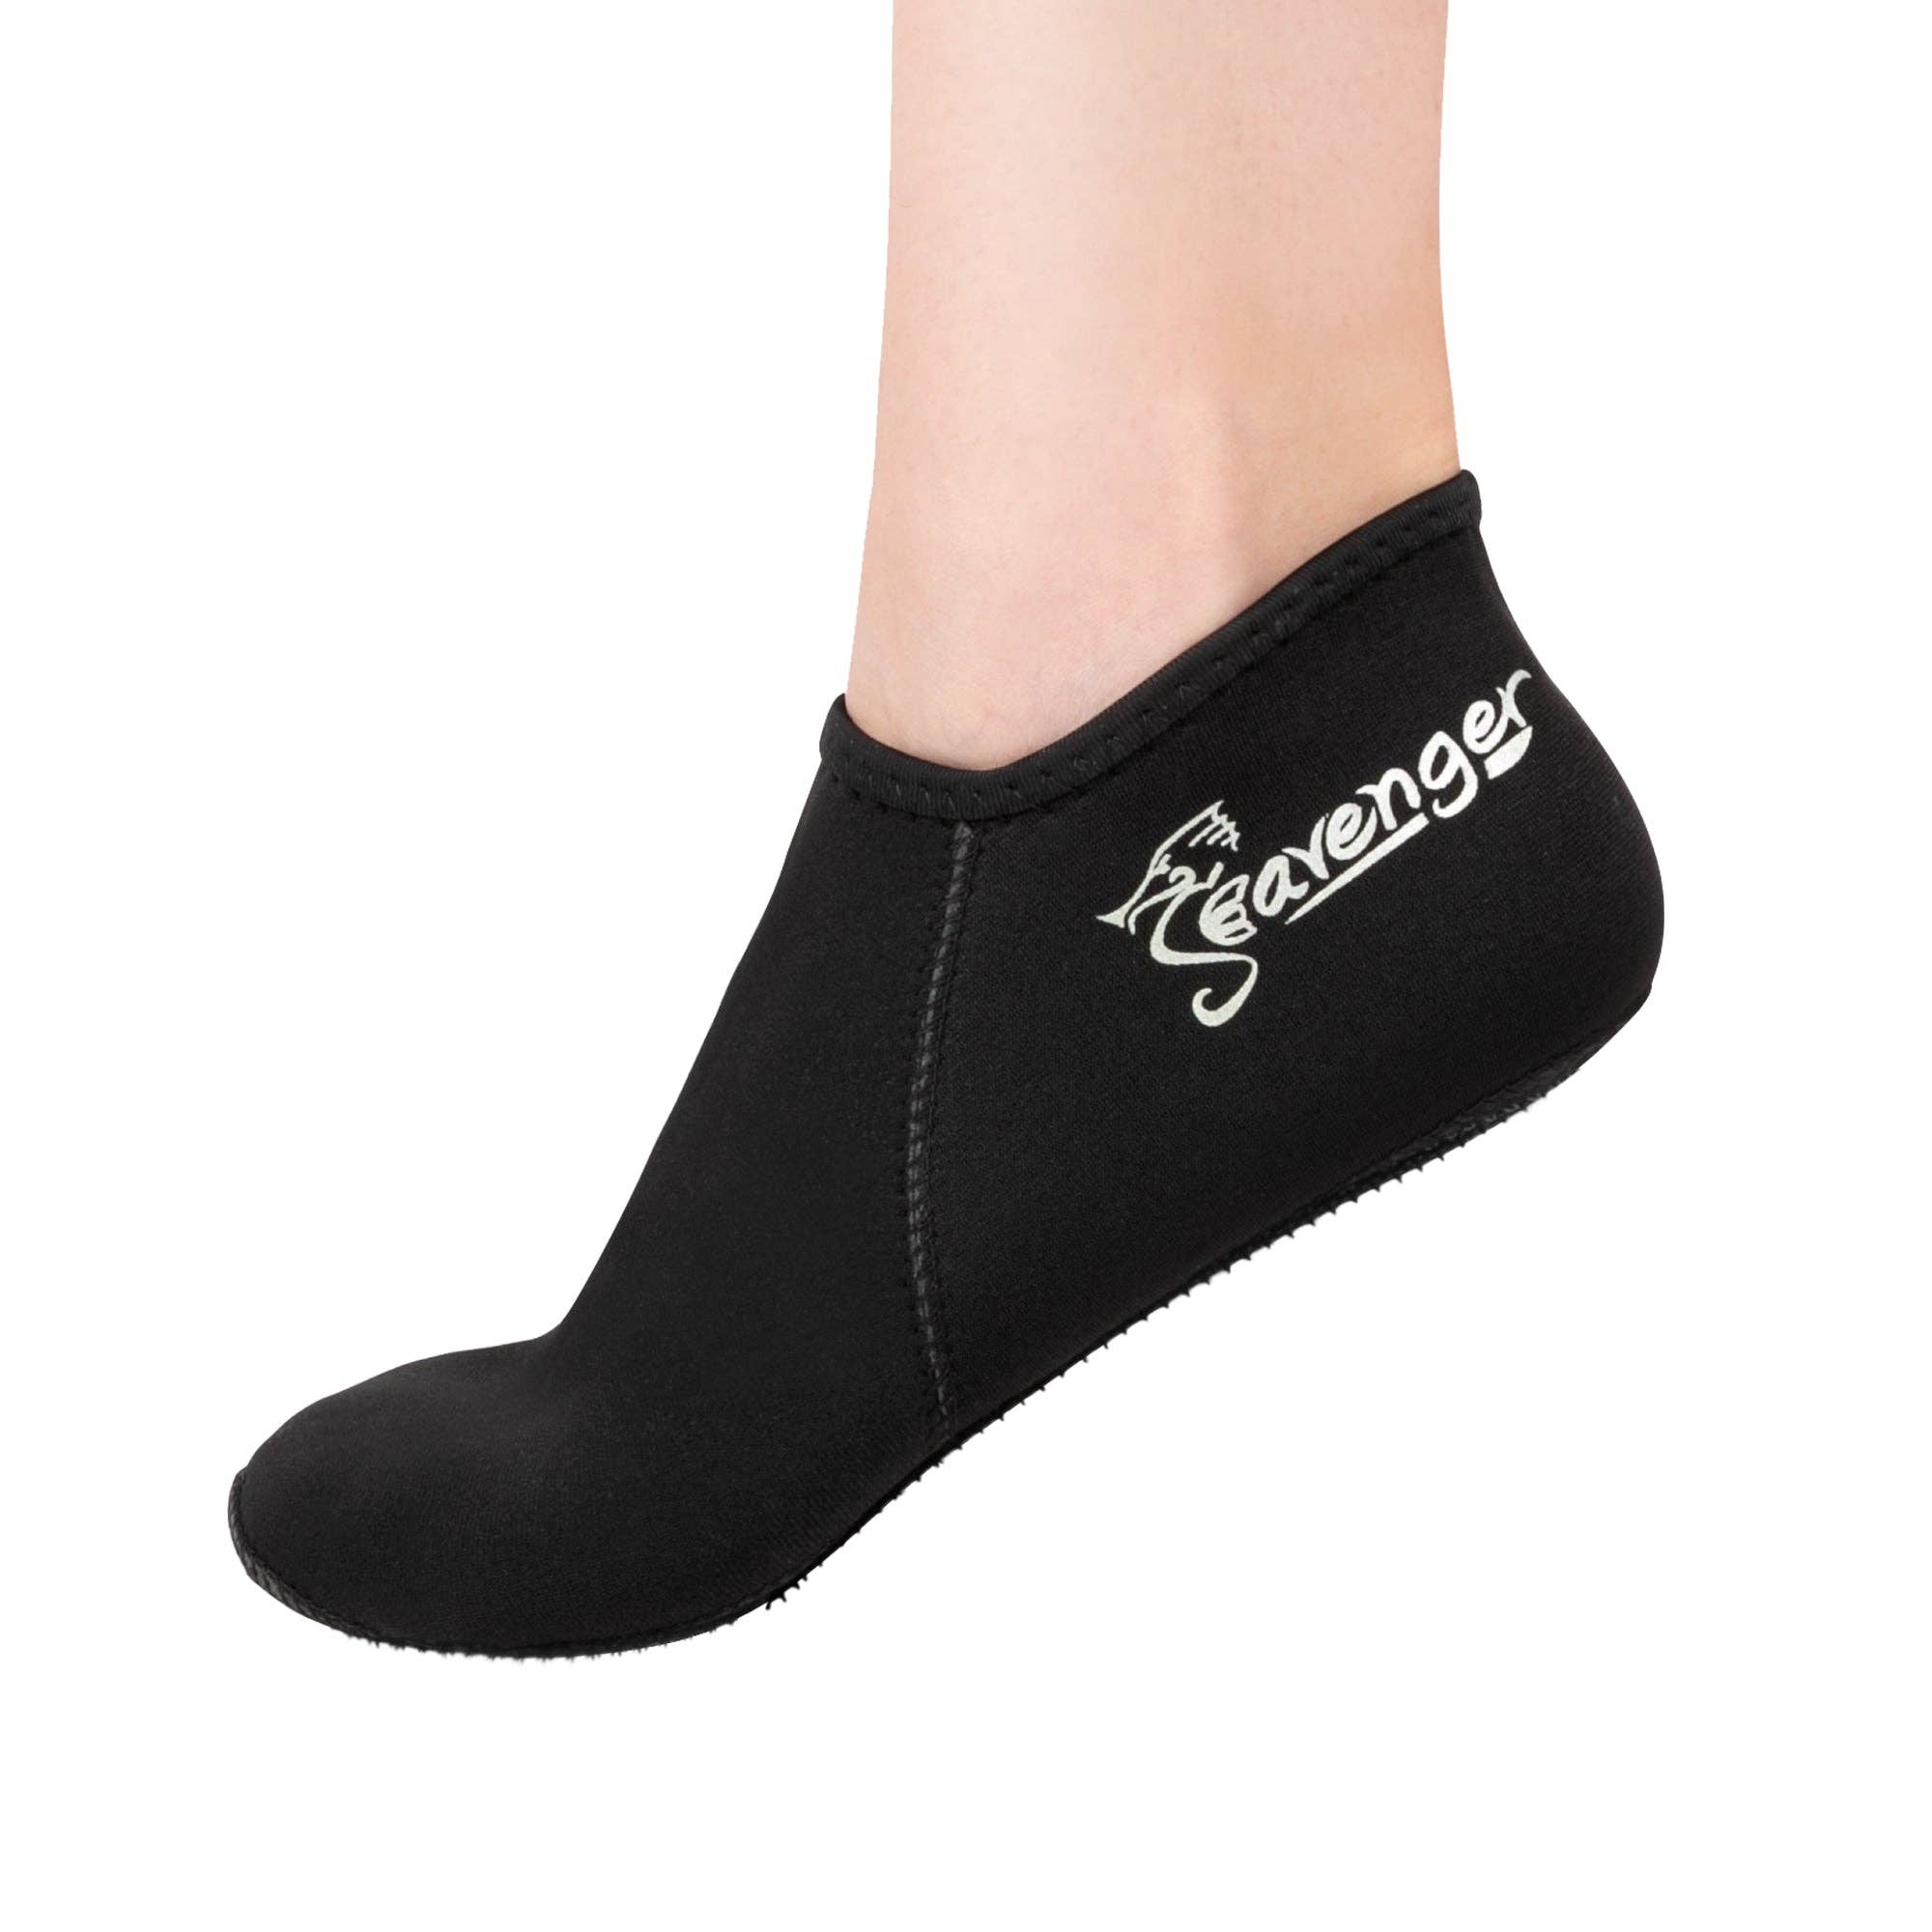 Zephyr 3mm Neoprene Socks - Black